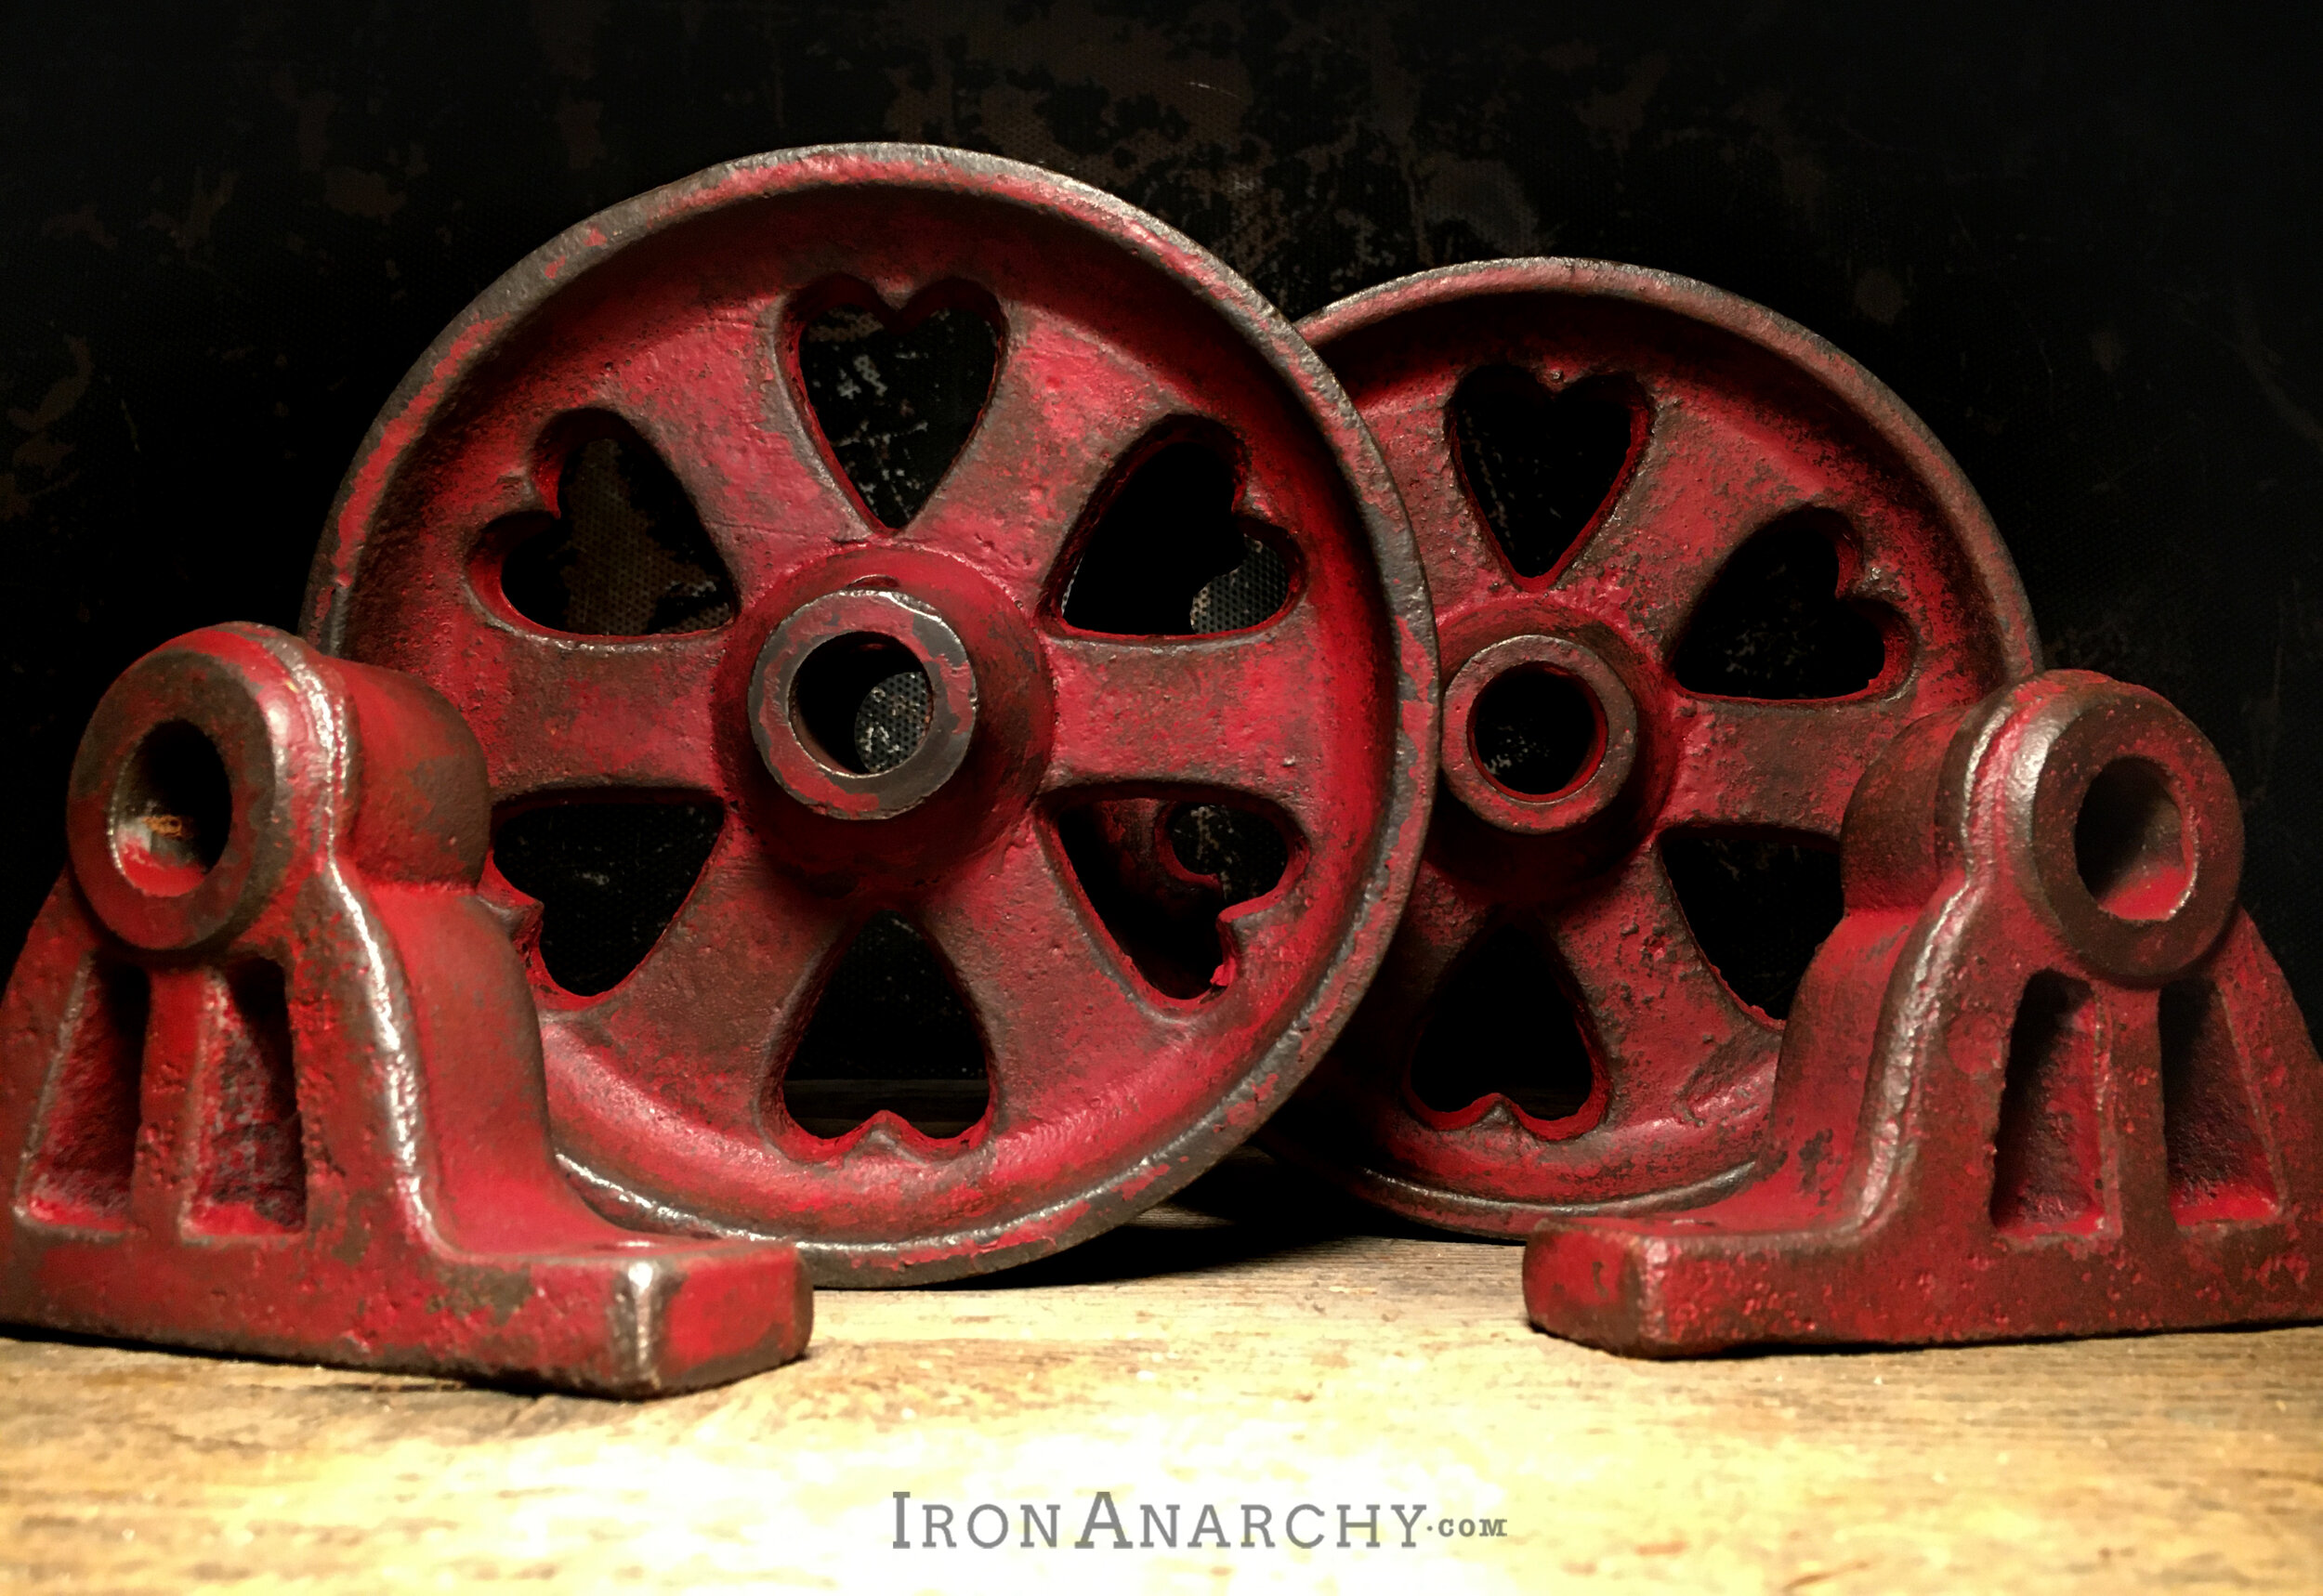 antique industrial cart wheels, vintage industrial cart wheels,